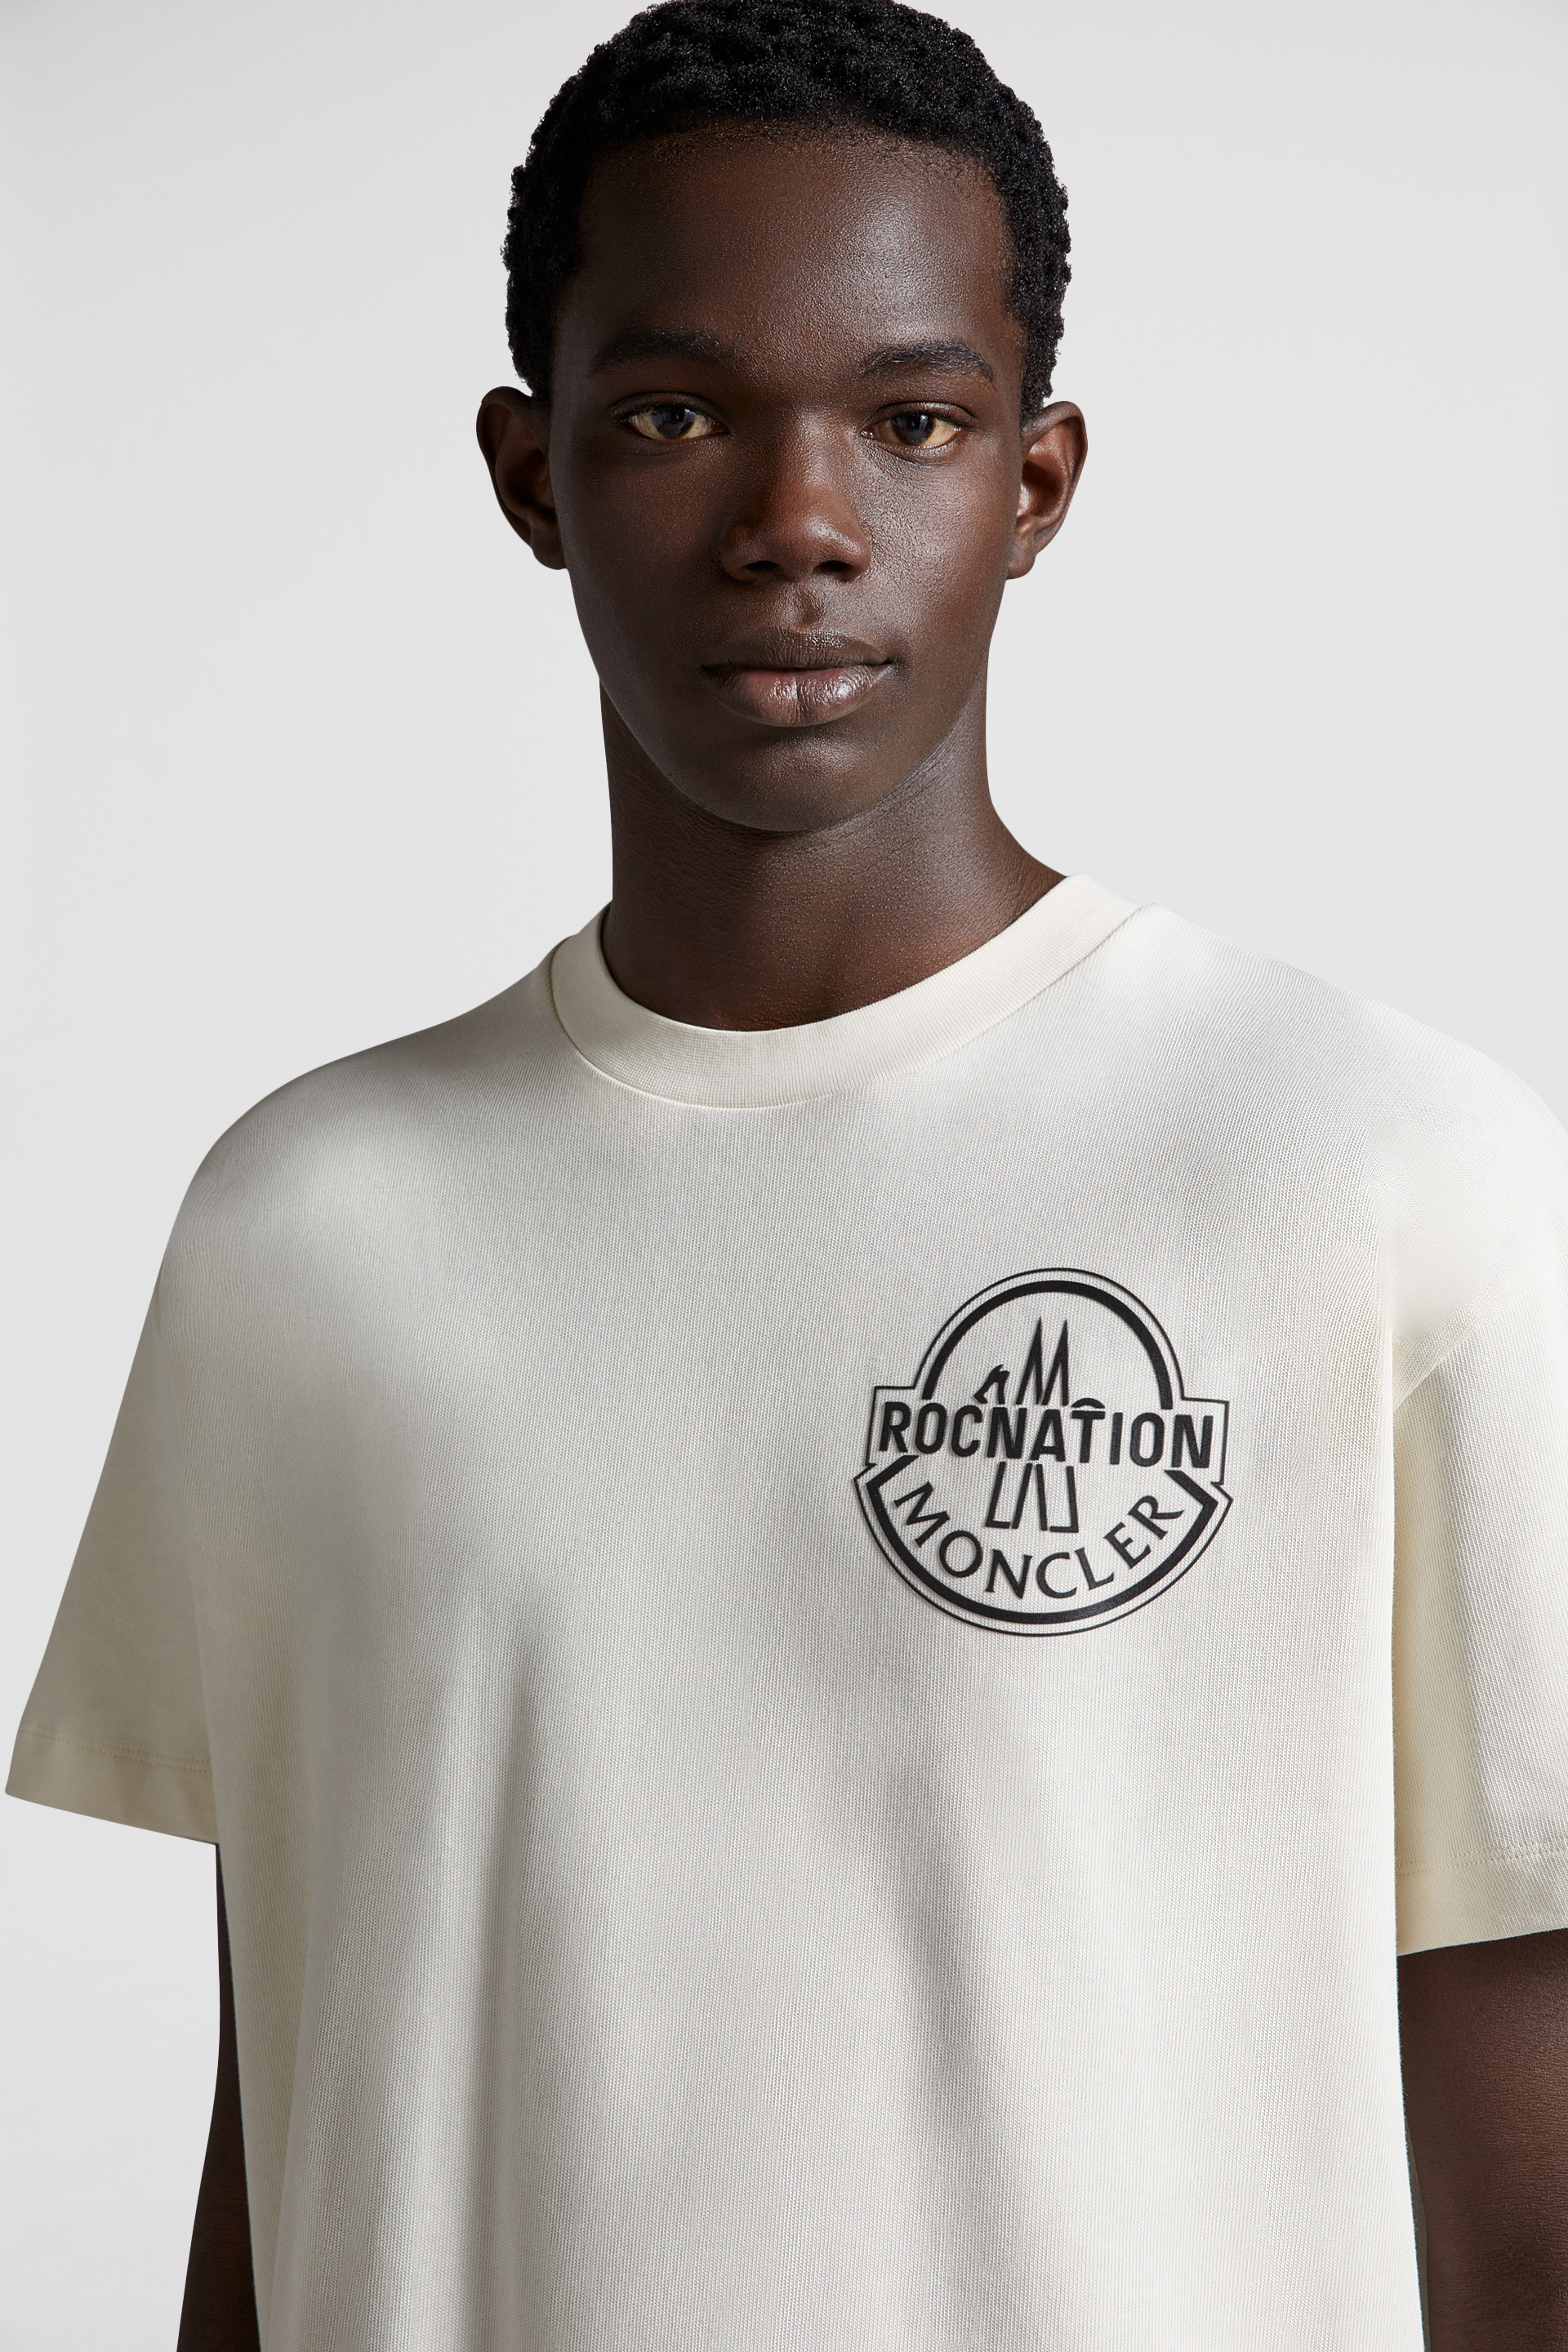 オフホワイト Tシャツ : Moncler x Roc Nation designed by Jay